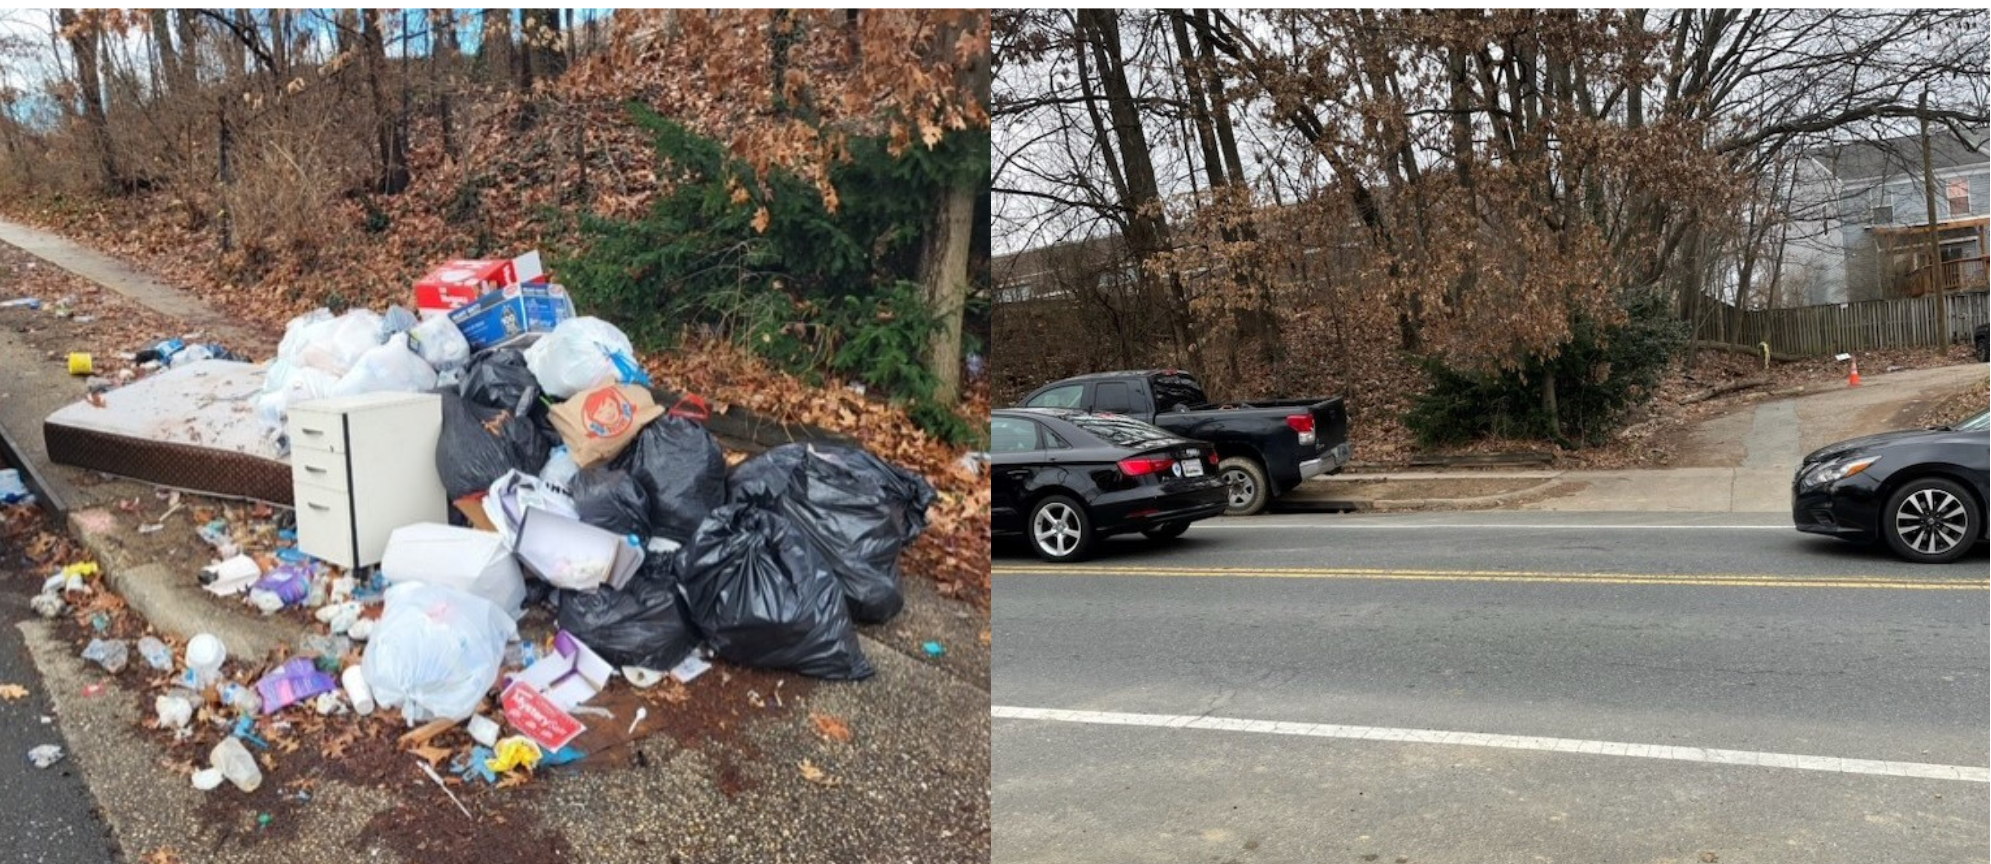 并排图片。左：路边堆放的垃圾。右：新放置的垃圾桶。